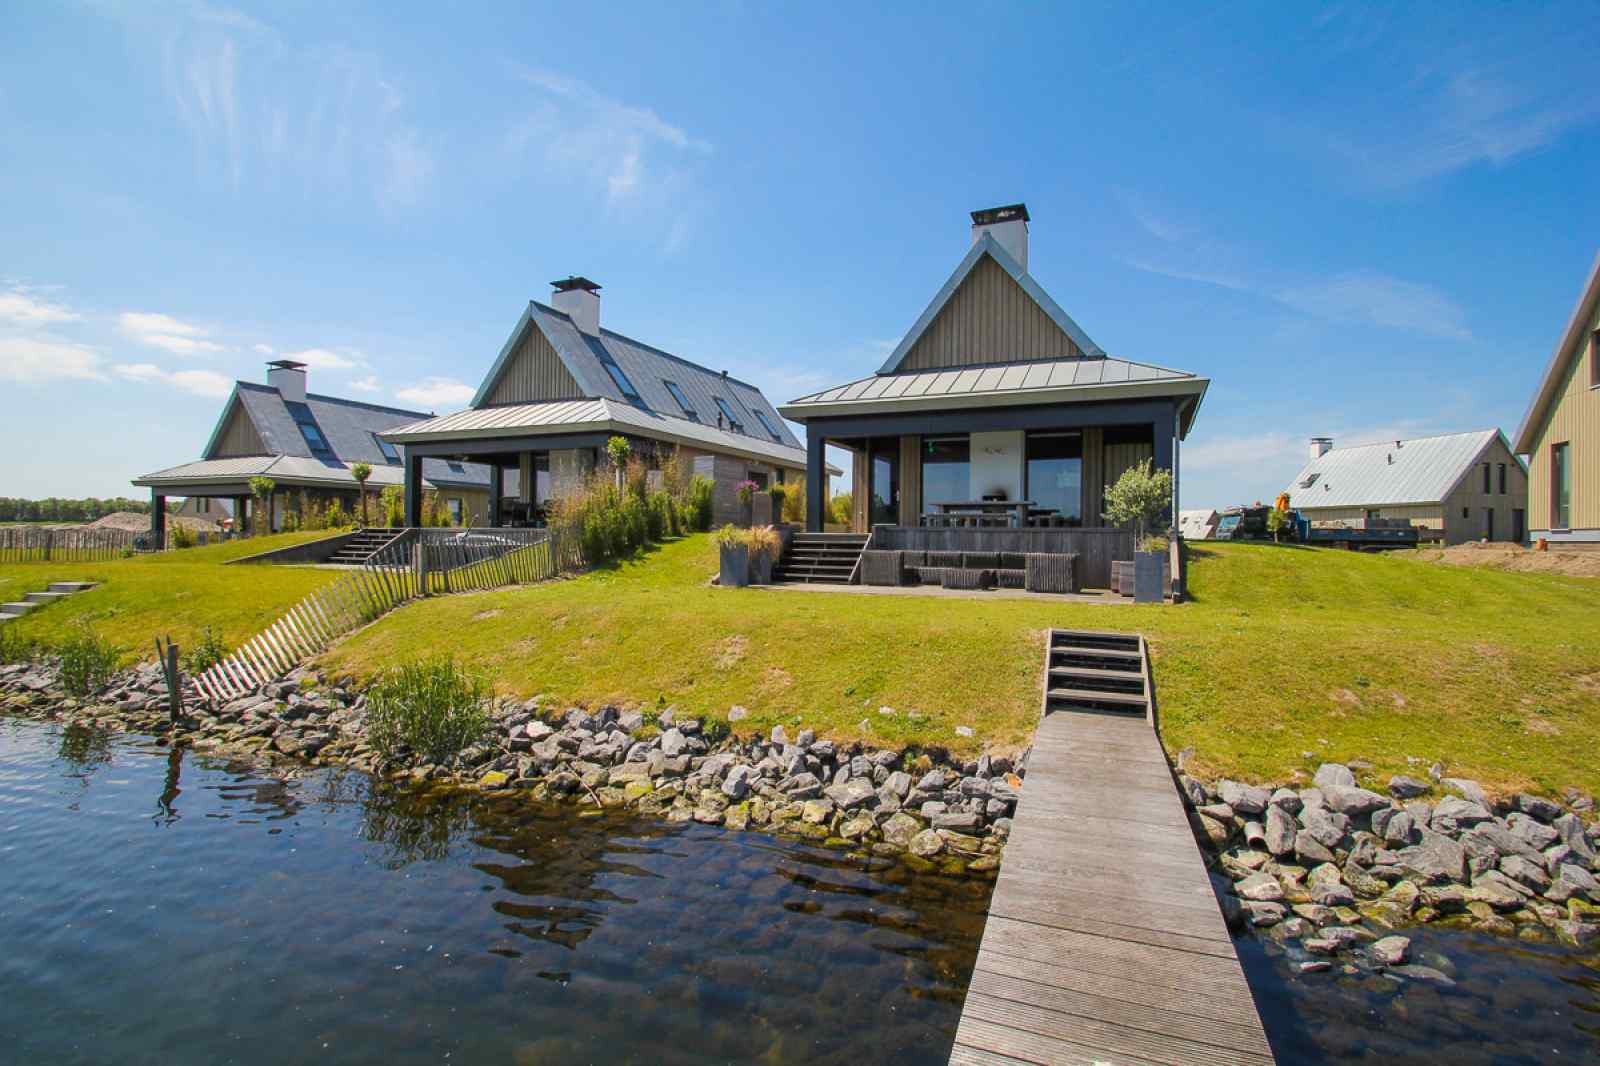 Luxe 8 persoons vakantievilla op vakantieresort in Tholen - Zeeland